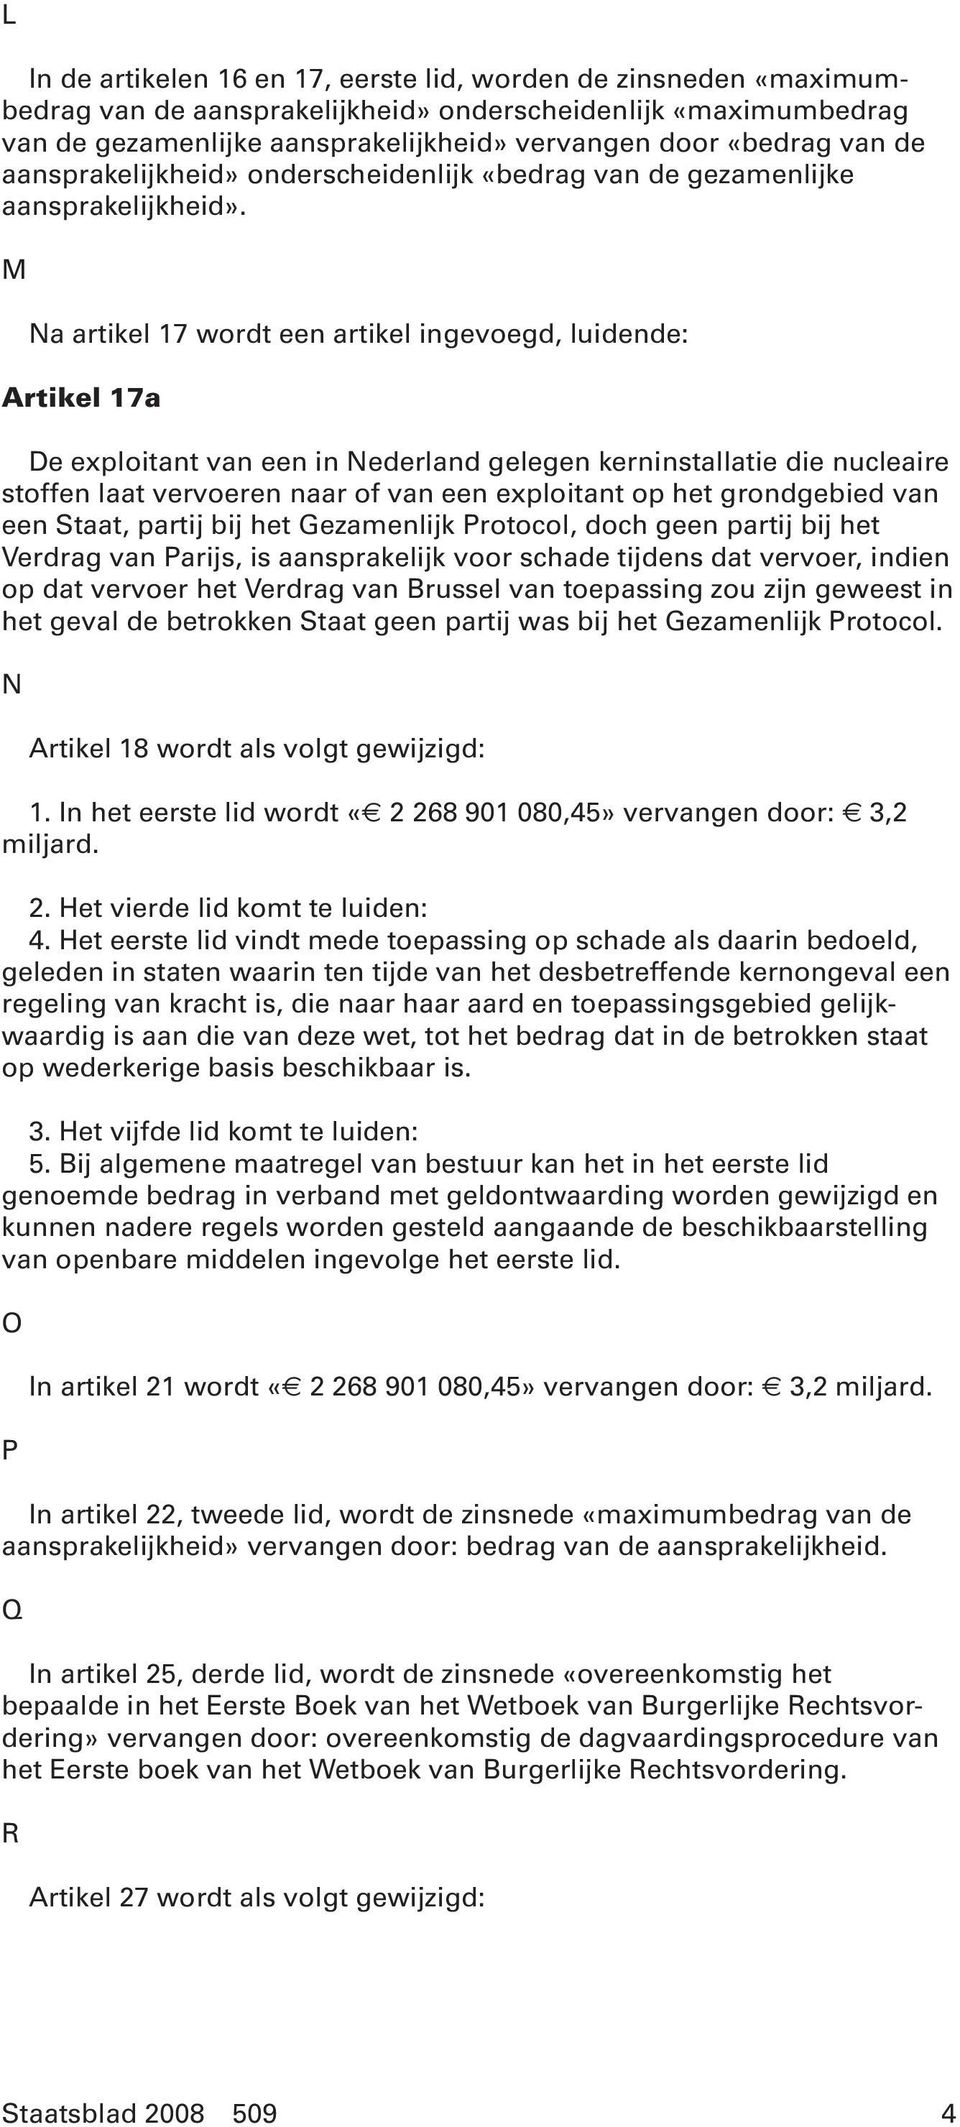 M Na artikel 17 wordt een artikel ingevoegd, luidende: Artikel 17a De exploitant van een in Nederland gelegen kerninstallatie die nucleaire stoffen laat vervoeren naar of van een exploitant op het